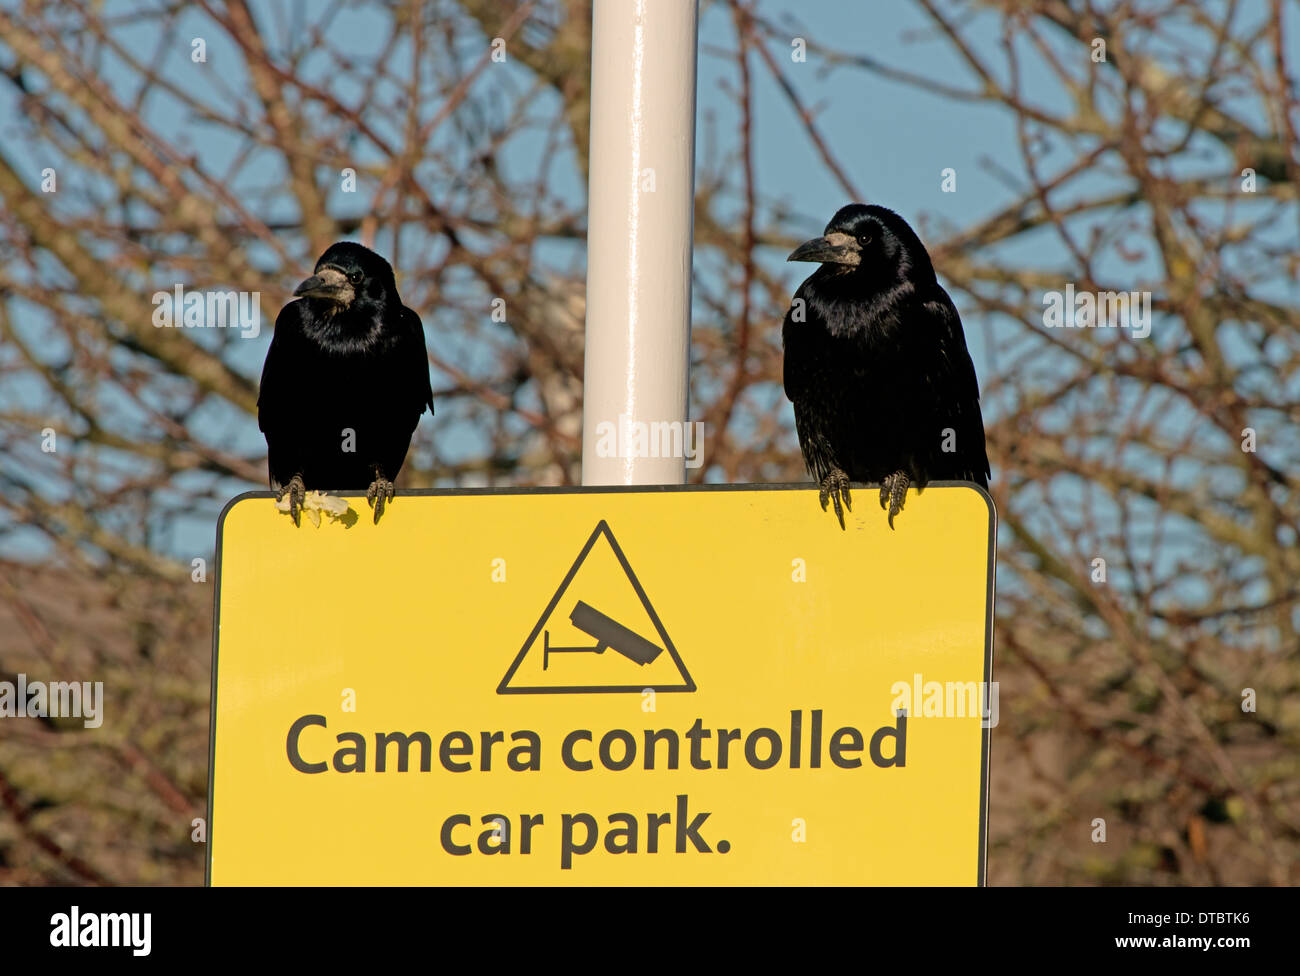 Coppia di Rooks-Corvus frugilegus, arroccato su una telecamera controllata segno parcheggio in Tesco's Car Park, Lewes, East Sussex, Regno Unito Foto Stock